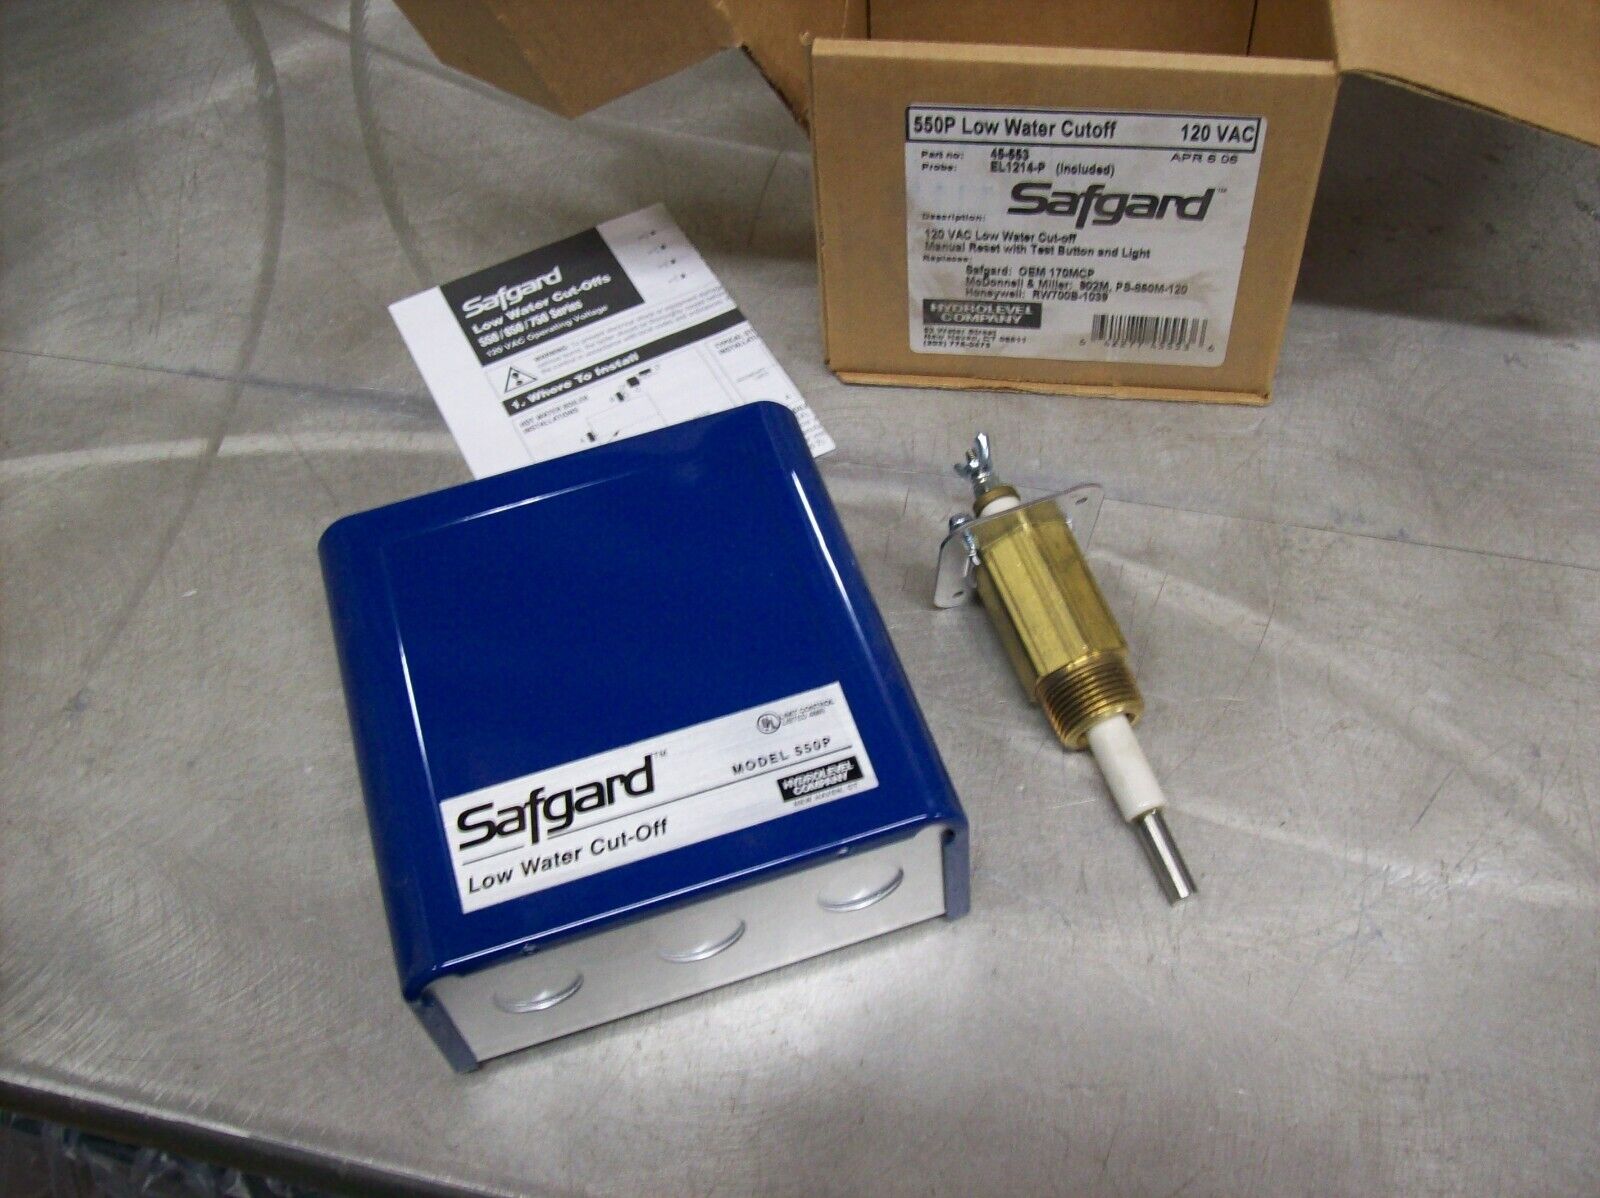 Safgard 550P Low Water Cutoff Control INCLUDES SENSOR 45-553